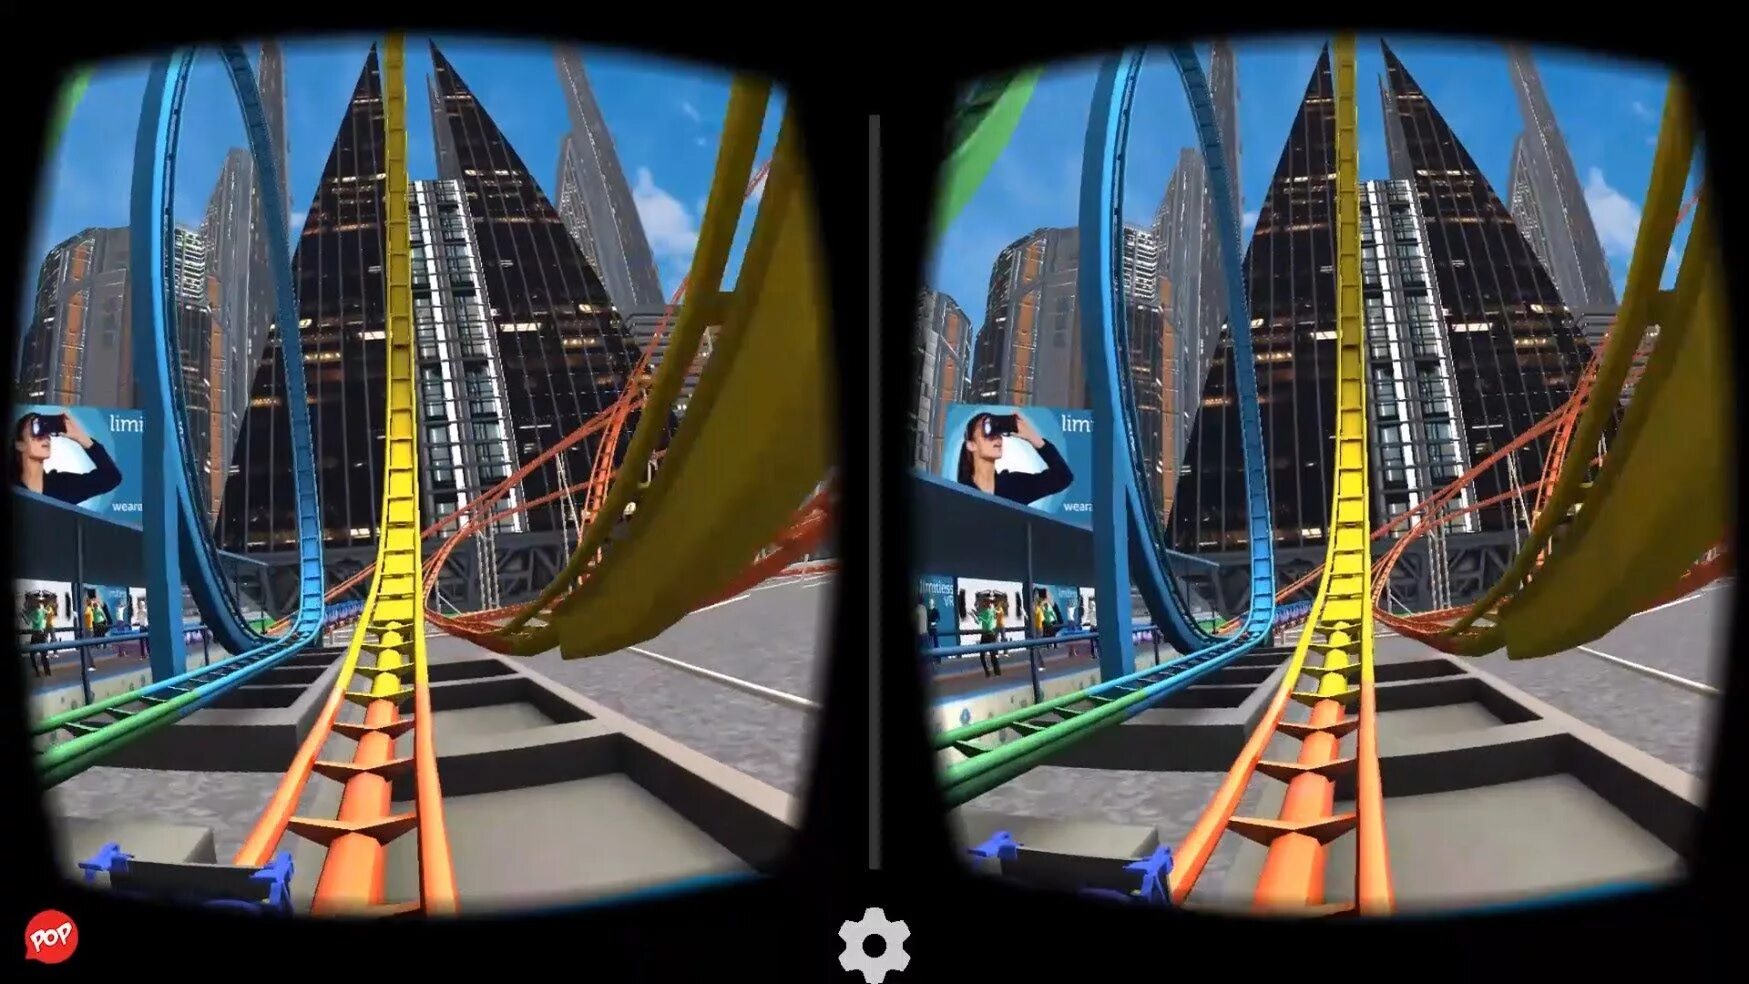 VR американские горки 360 для ВР очков. VR 9d 360 аттракцион. Американские горки на ps4 VR Rollercoaster Legends. Американские горки Rollercoaster в Oculus VR. Видео 3 60